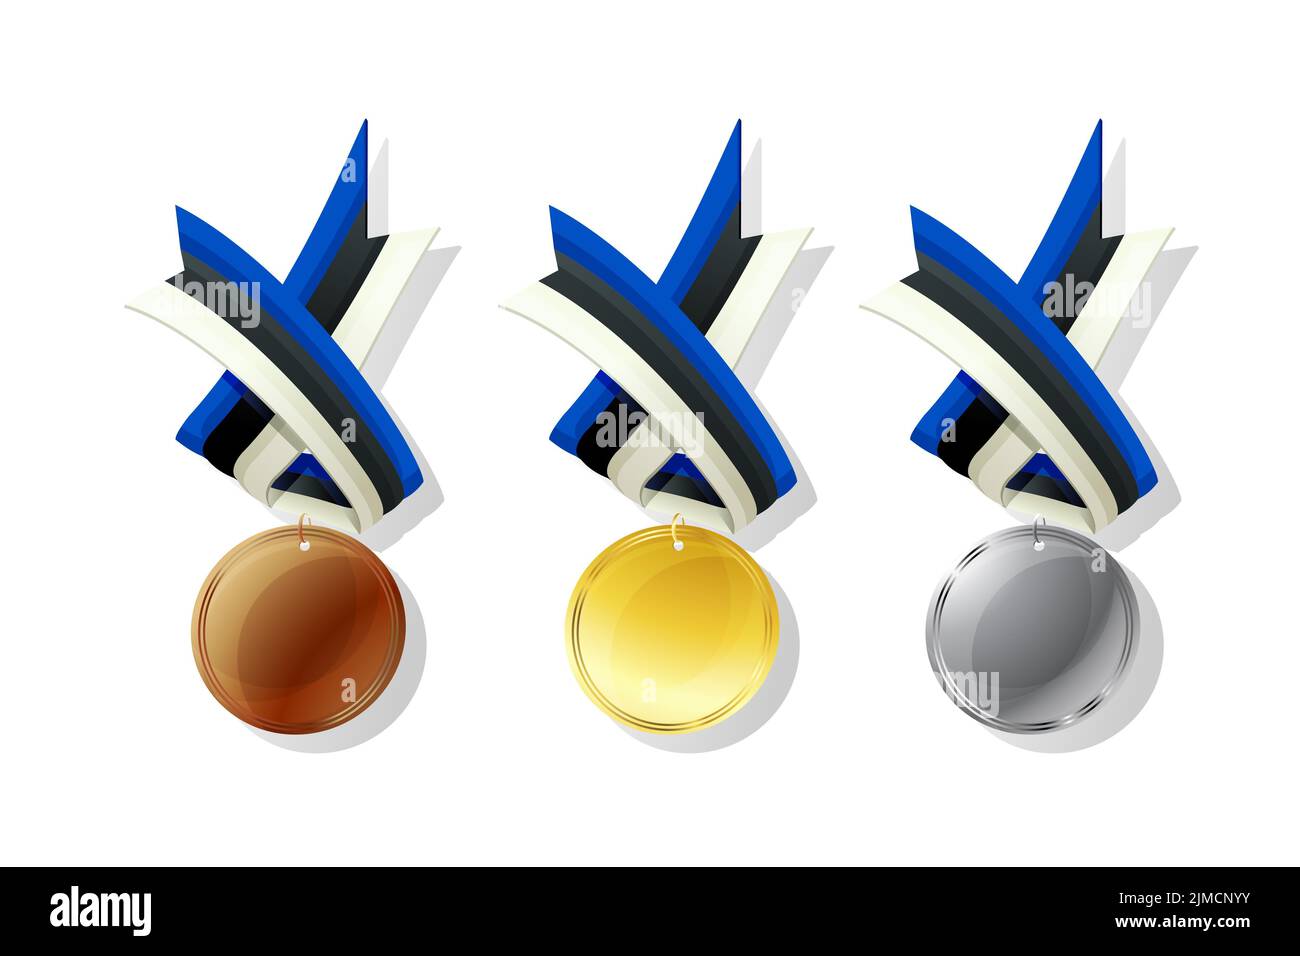 Estonian médailles en or, argent et bronze avec drapeau national. Les objets vectoriels isolé sur fond blanc Banque D'Images